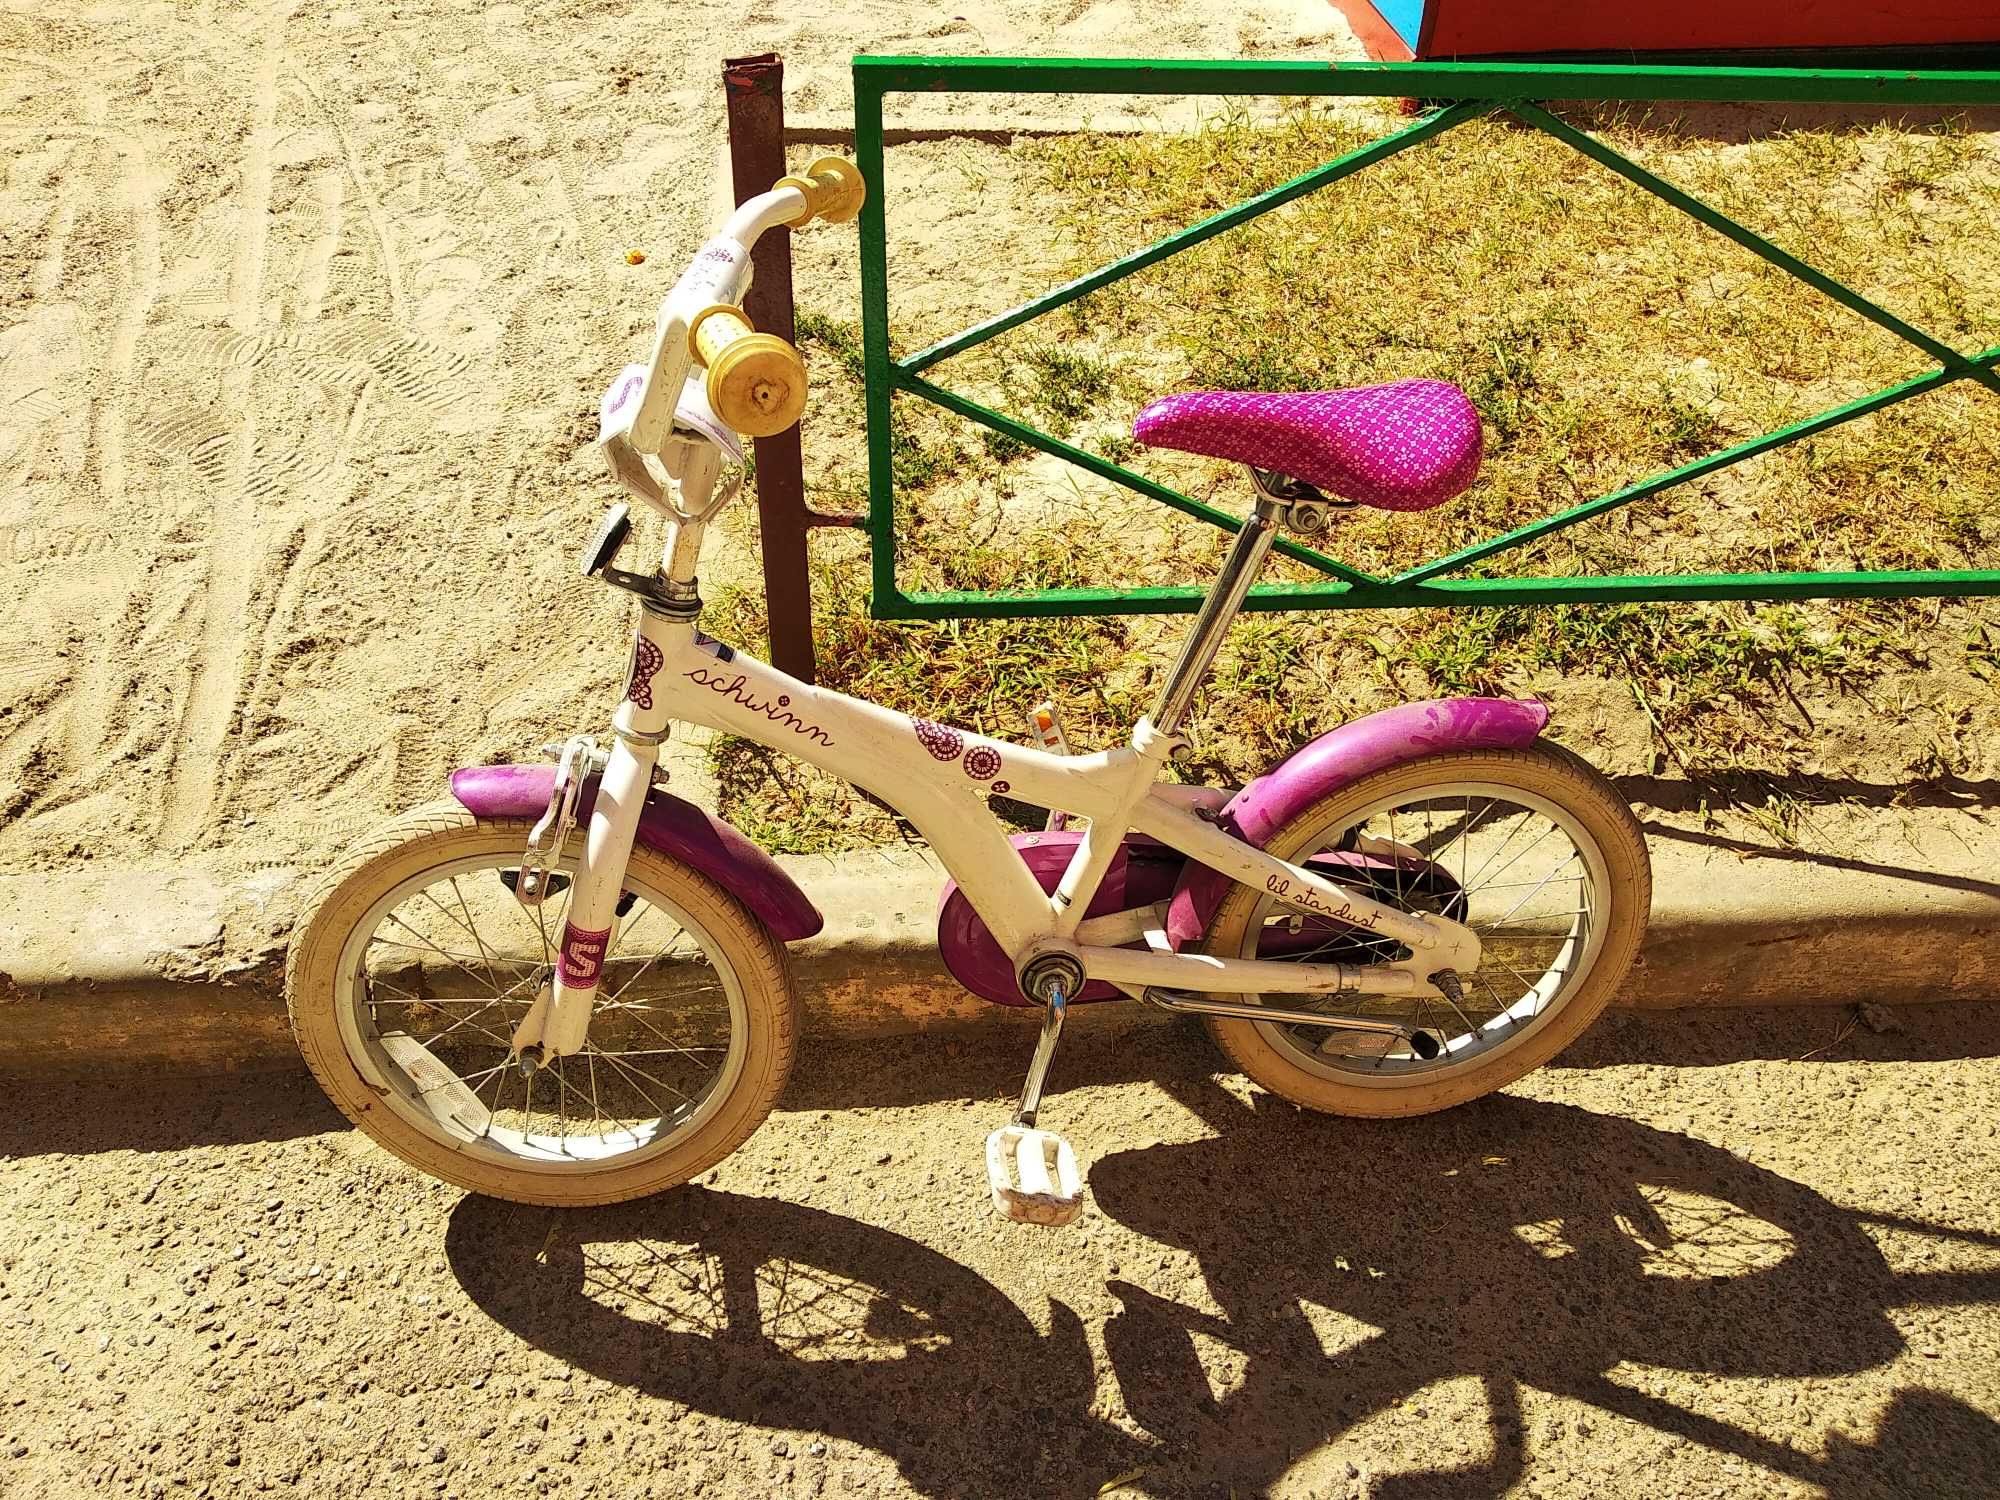 Велосипед дитячий Schwinn